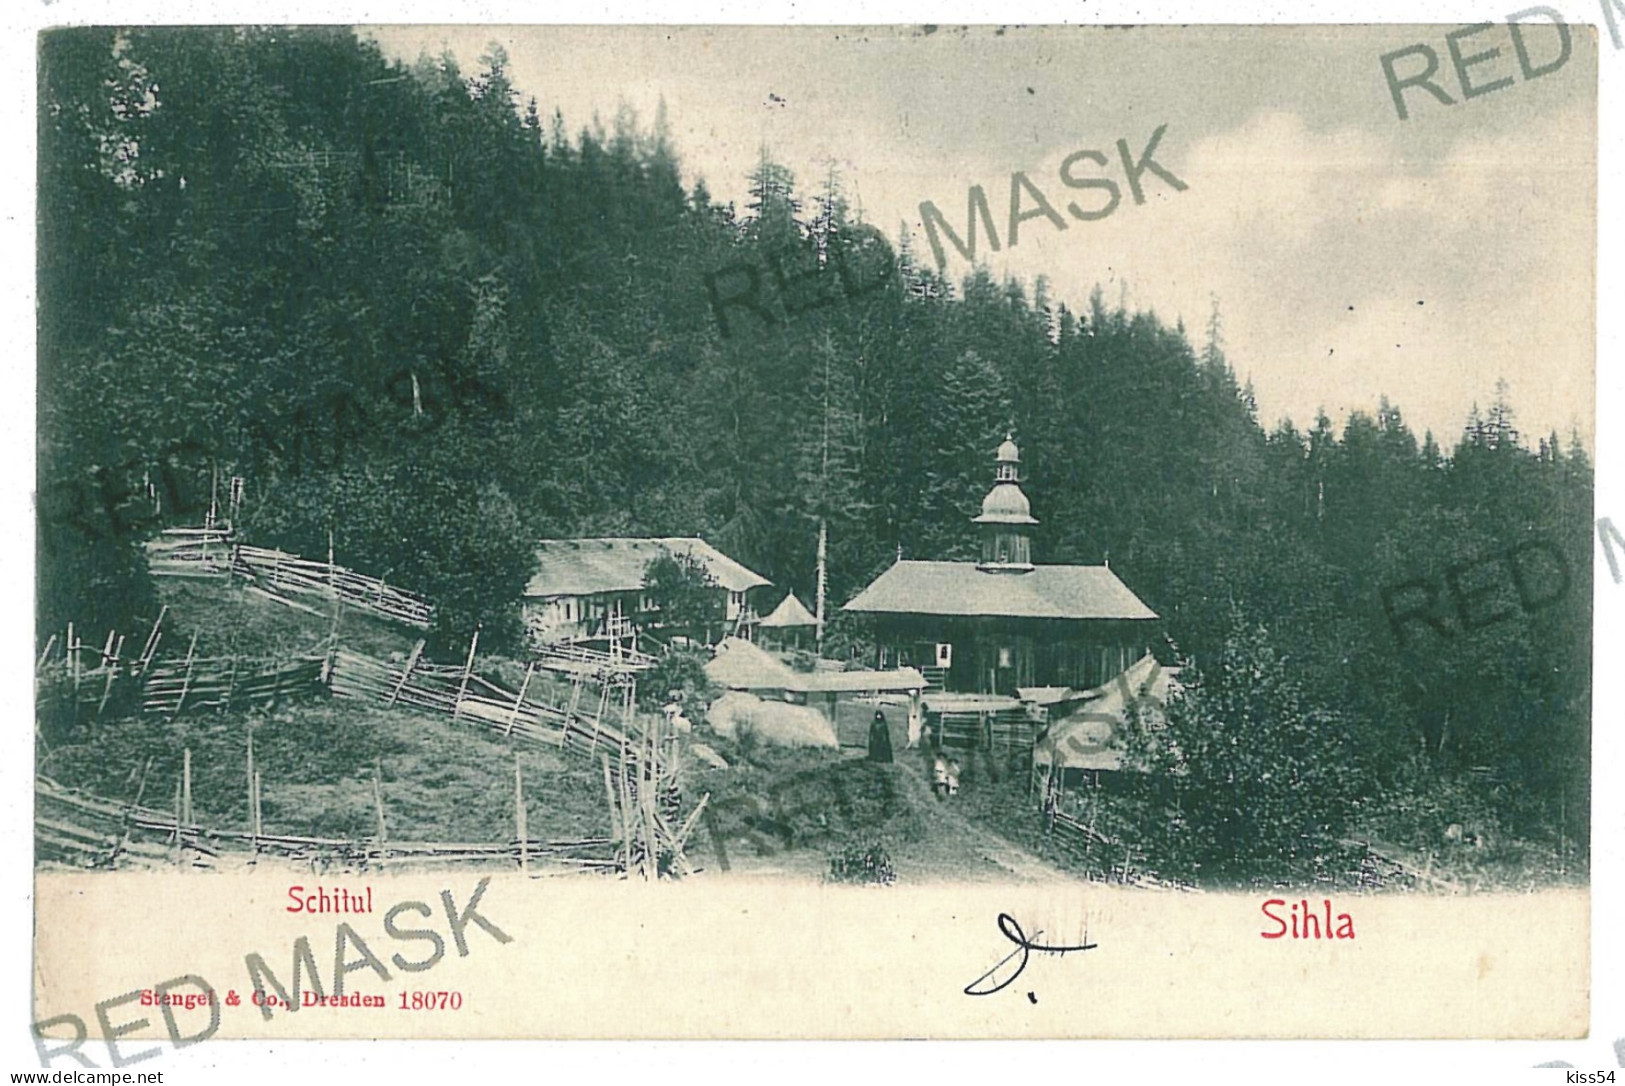 RO 40 - 11748 Schitul SIHLA, Neamt, Romania - Old Postcard - Used - 1906 - Rumänien